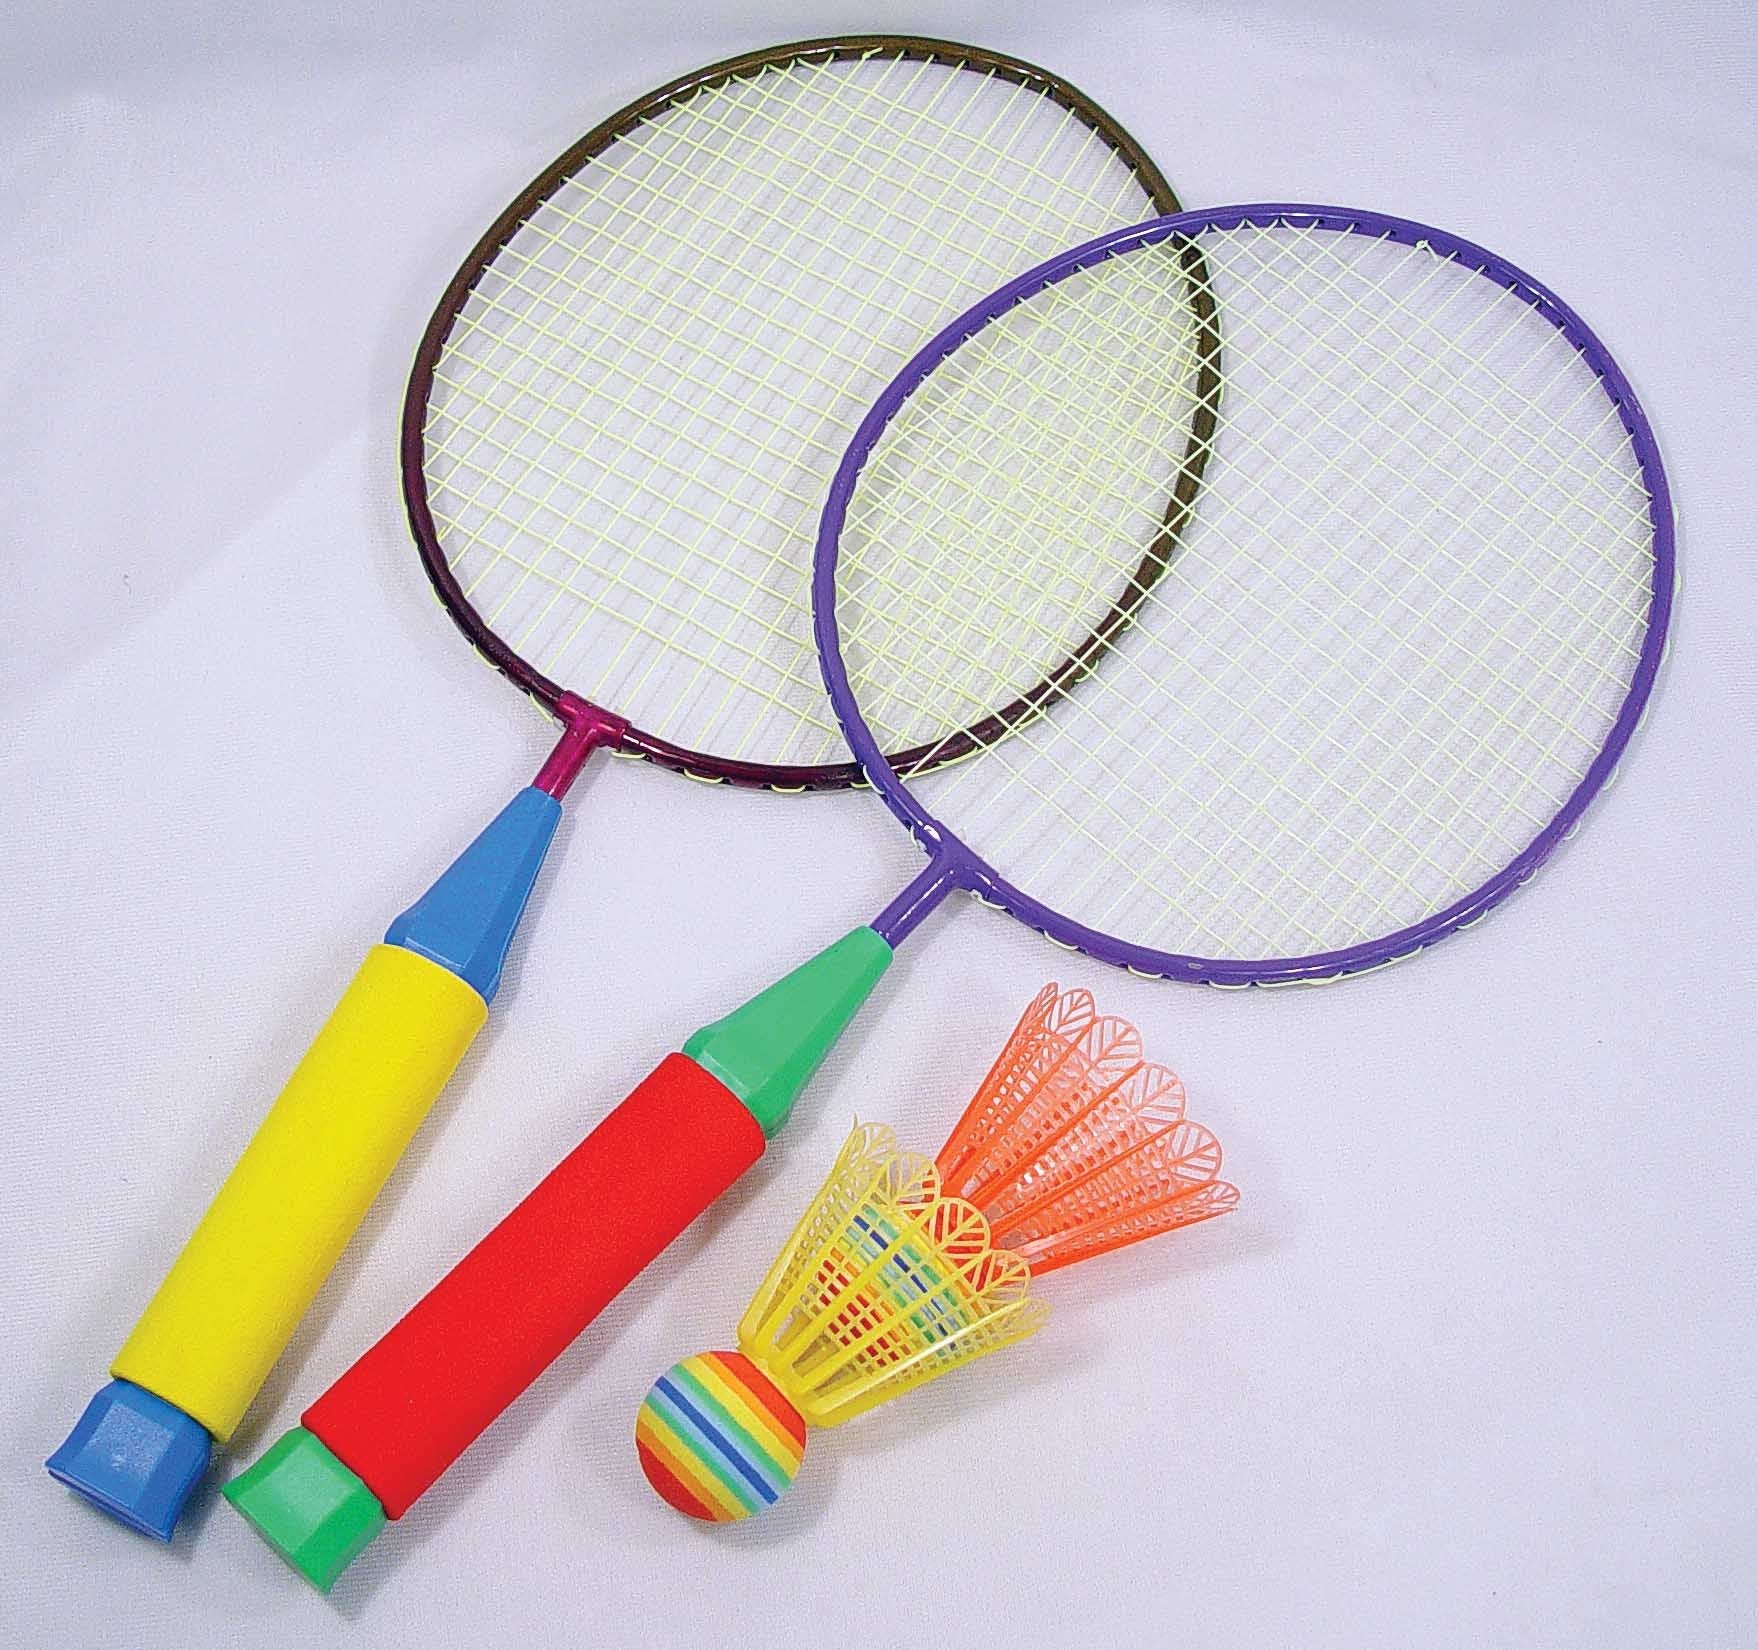 Junior Badminton Set